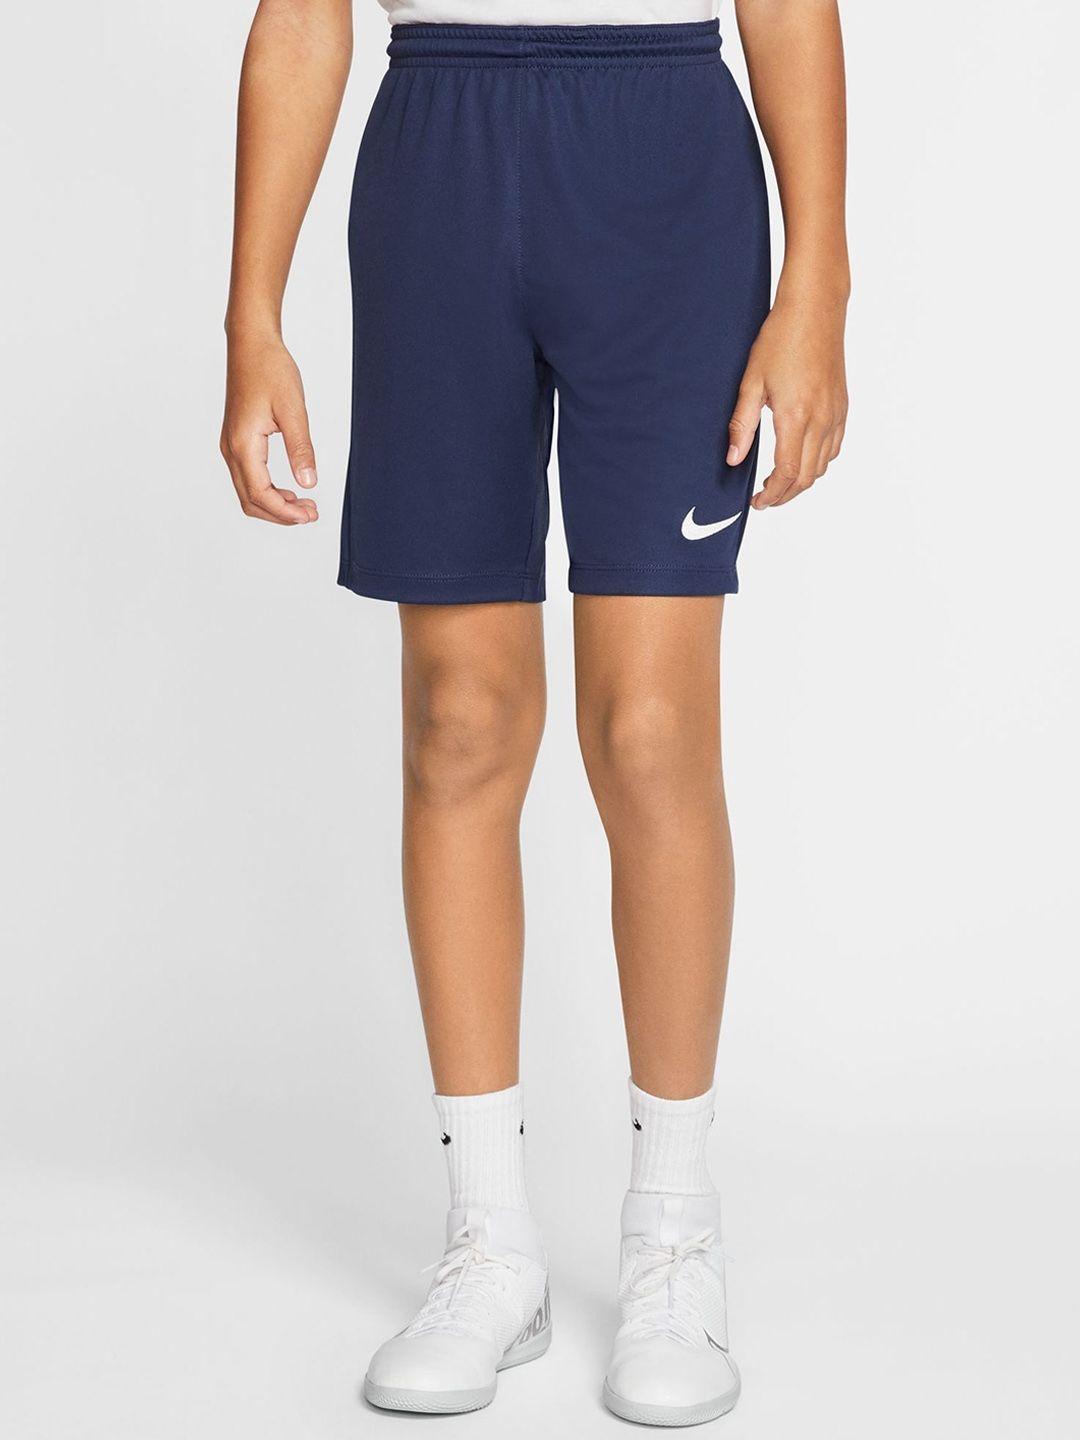 nike-kids-mid-rise-dri-fit-shorts